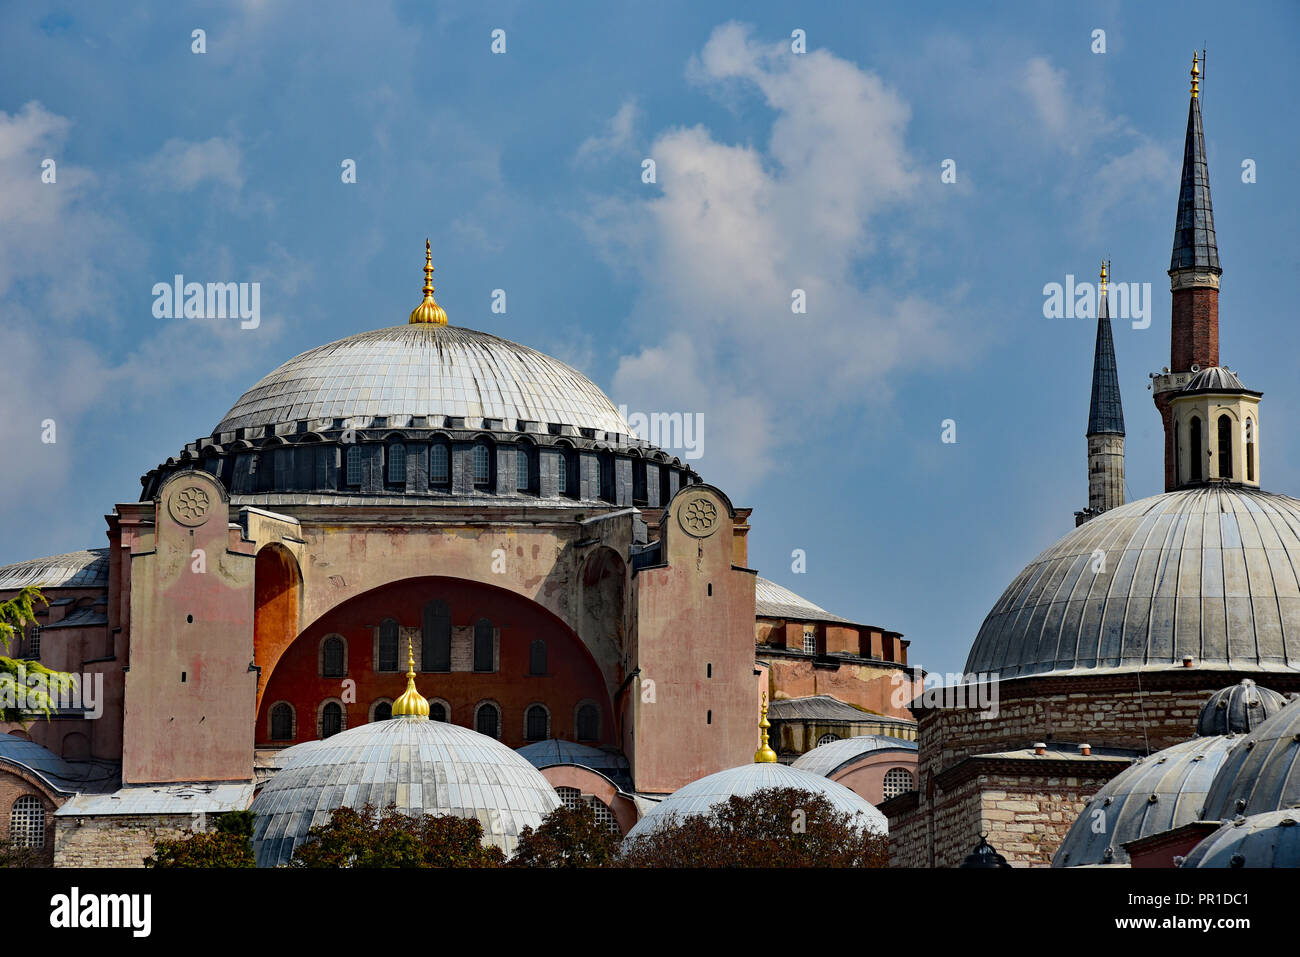 La cupola di Haghia Sophia, che raggiunge un altezza di 56 metri, e la minore delle cupole della "Bagni di Roxelana', Istanbul, Turchia. Foto Stock